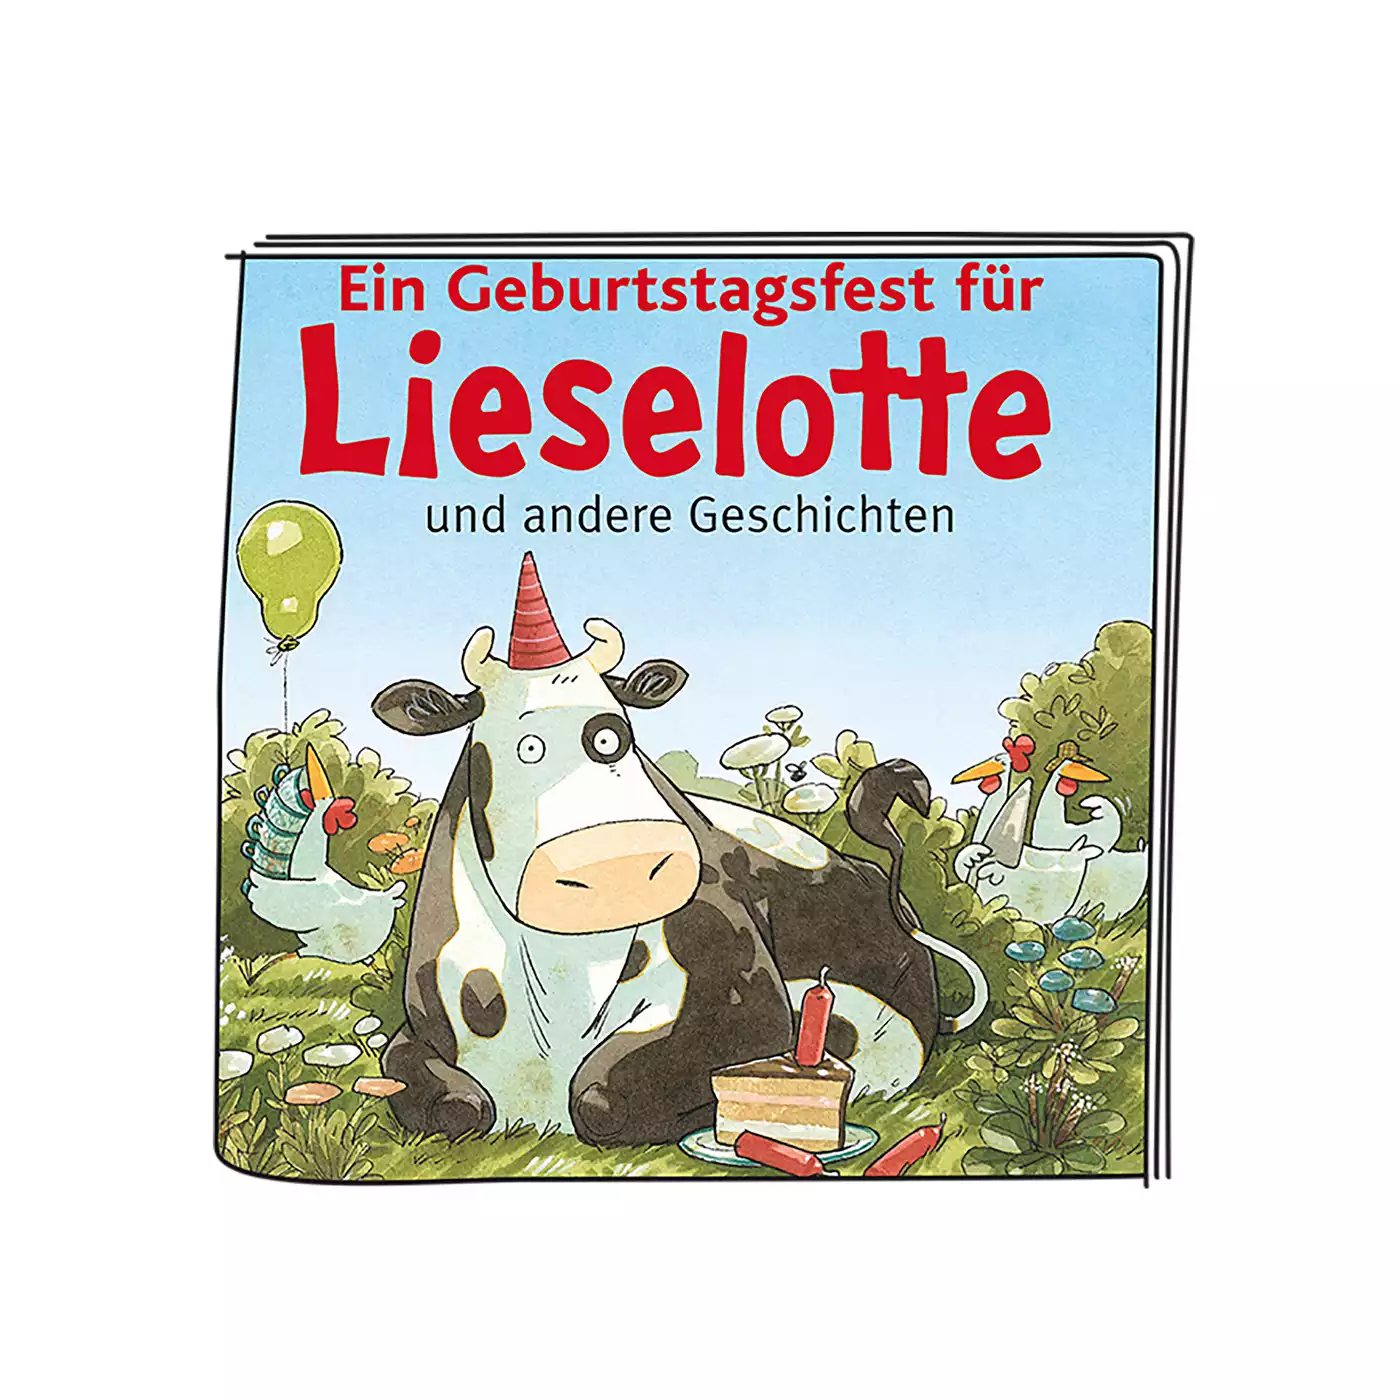 Ein Geburtstagsfest für Lieselotte und andere Geschichten tonies 2000575333204 5